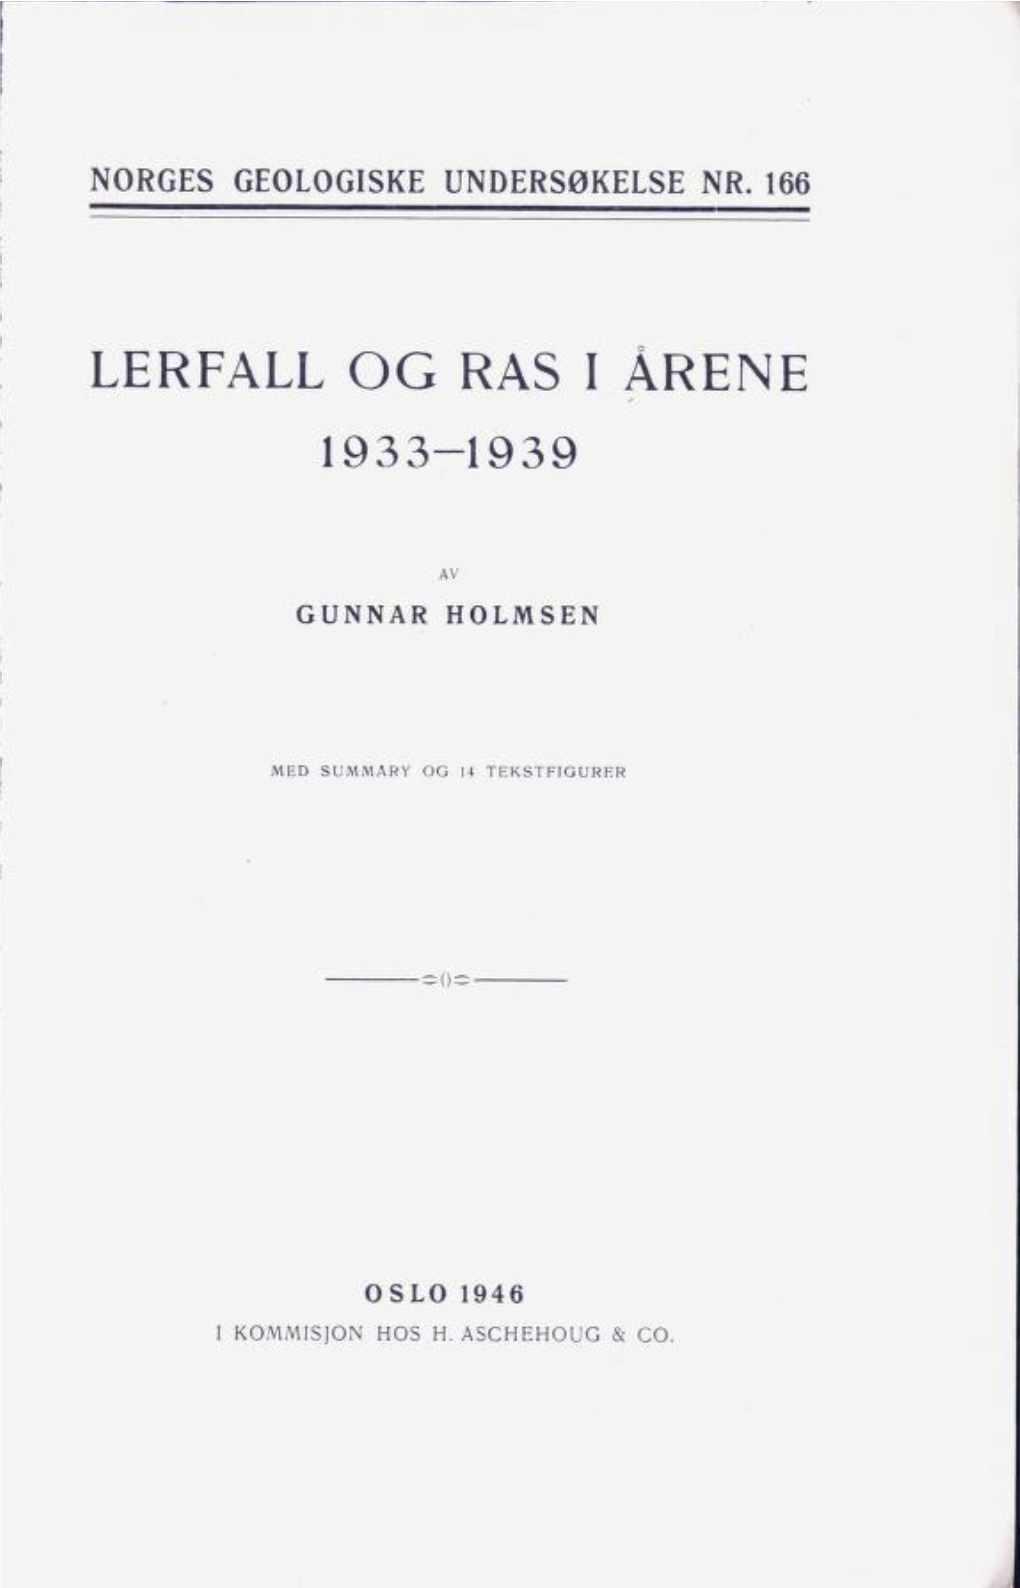 Lerfall Og Ras I Årene 1933-1939